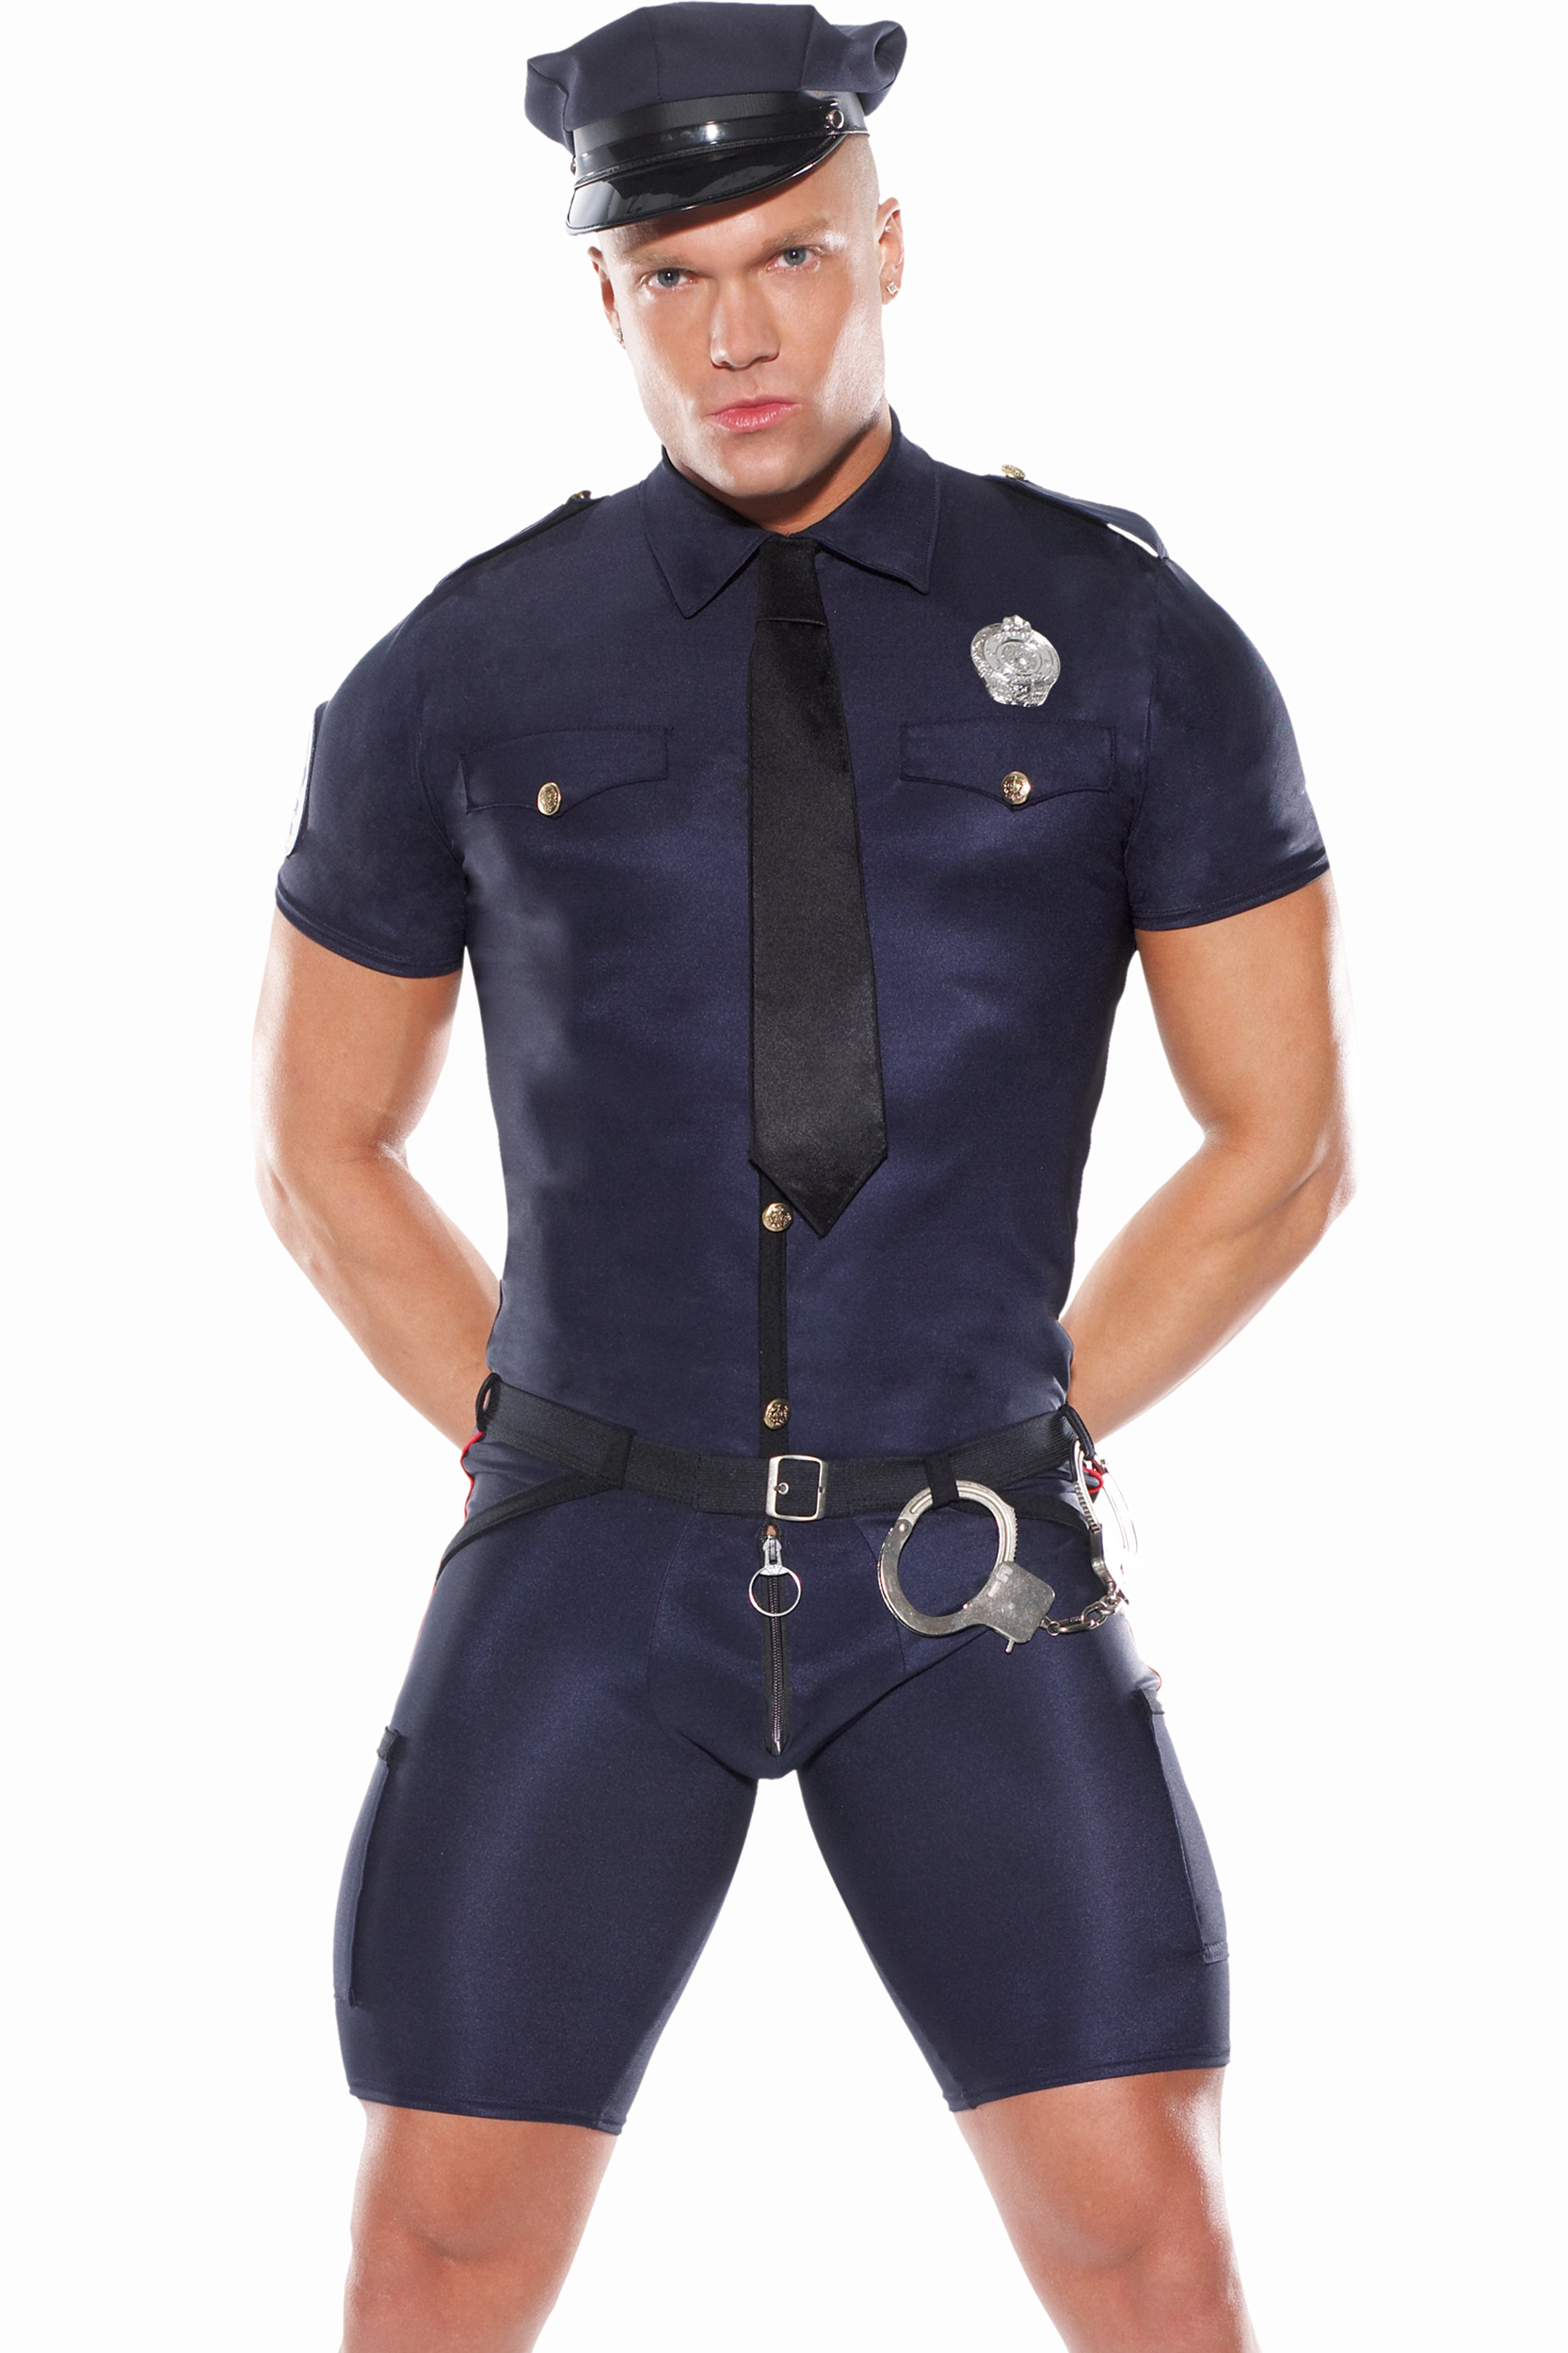 Man uniform